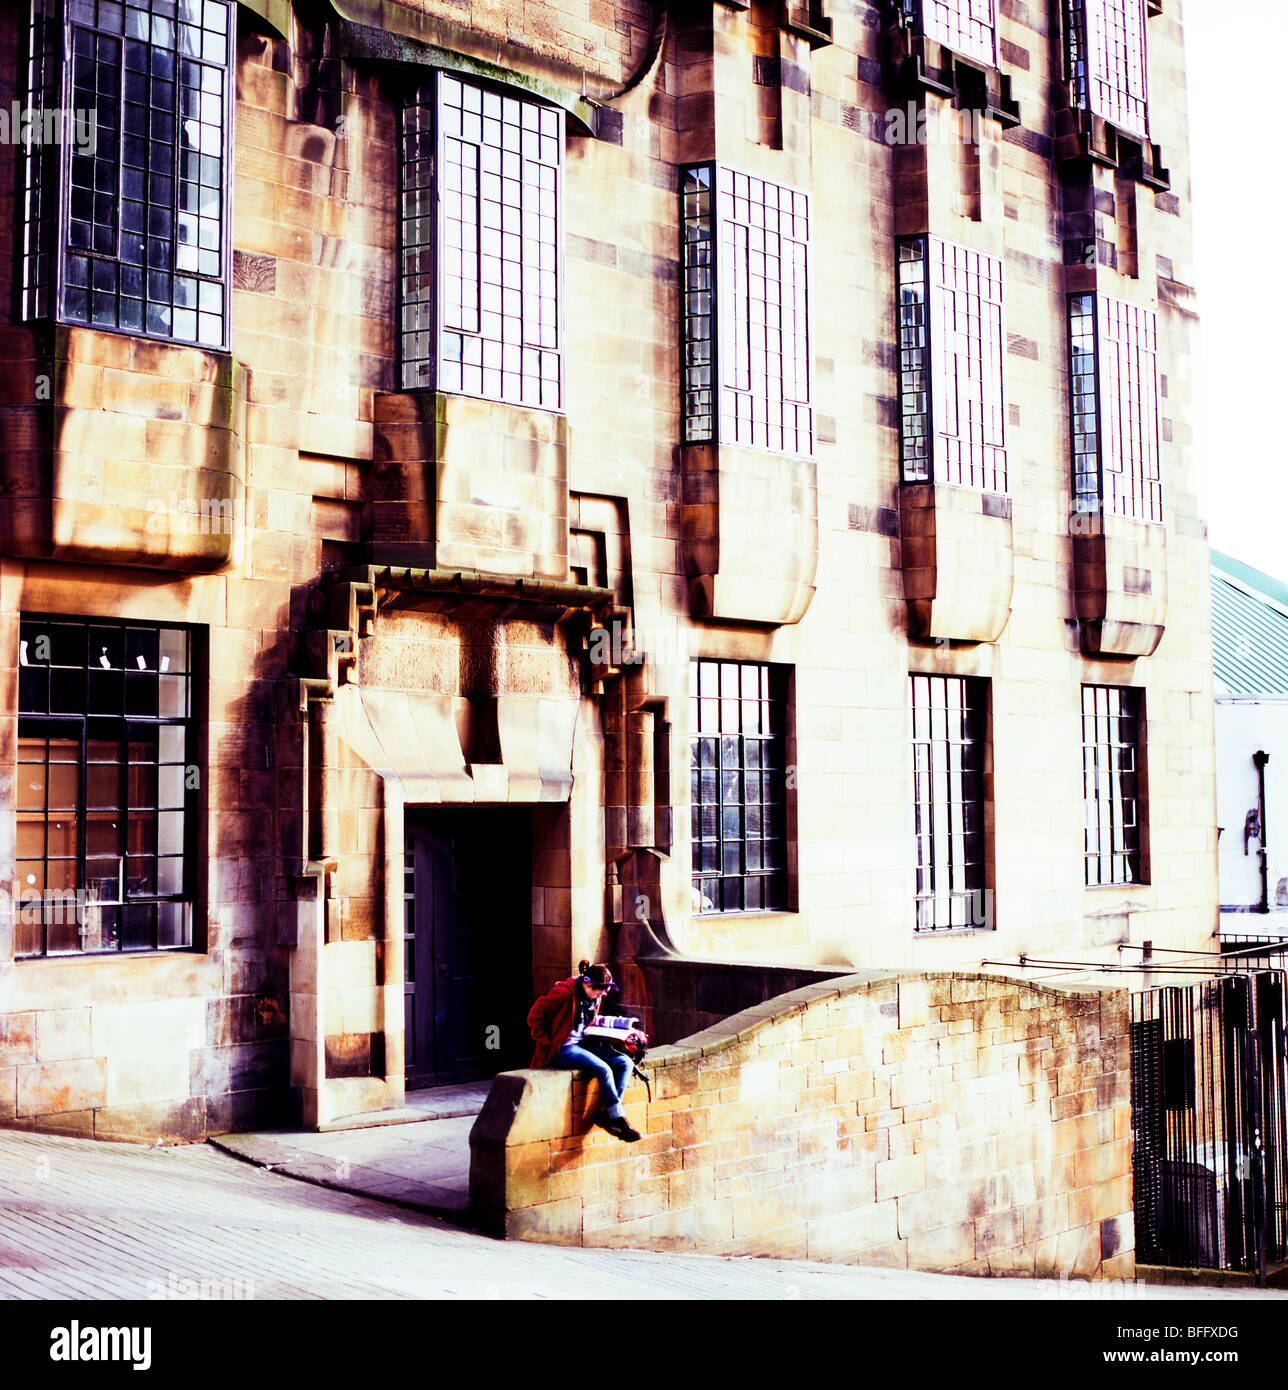 Ein Mädchen ein Buch lesen außerhalb der Schule Gebäude von Charles Renee MacIntosh Glasgow Schottland Großbritannien KATHY DEWITT Stockfoto